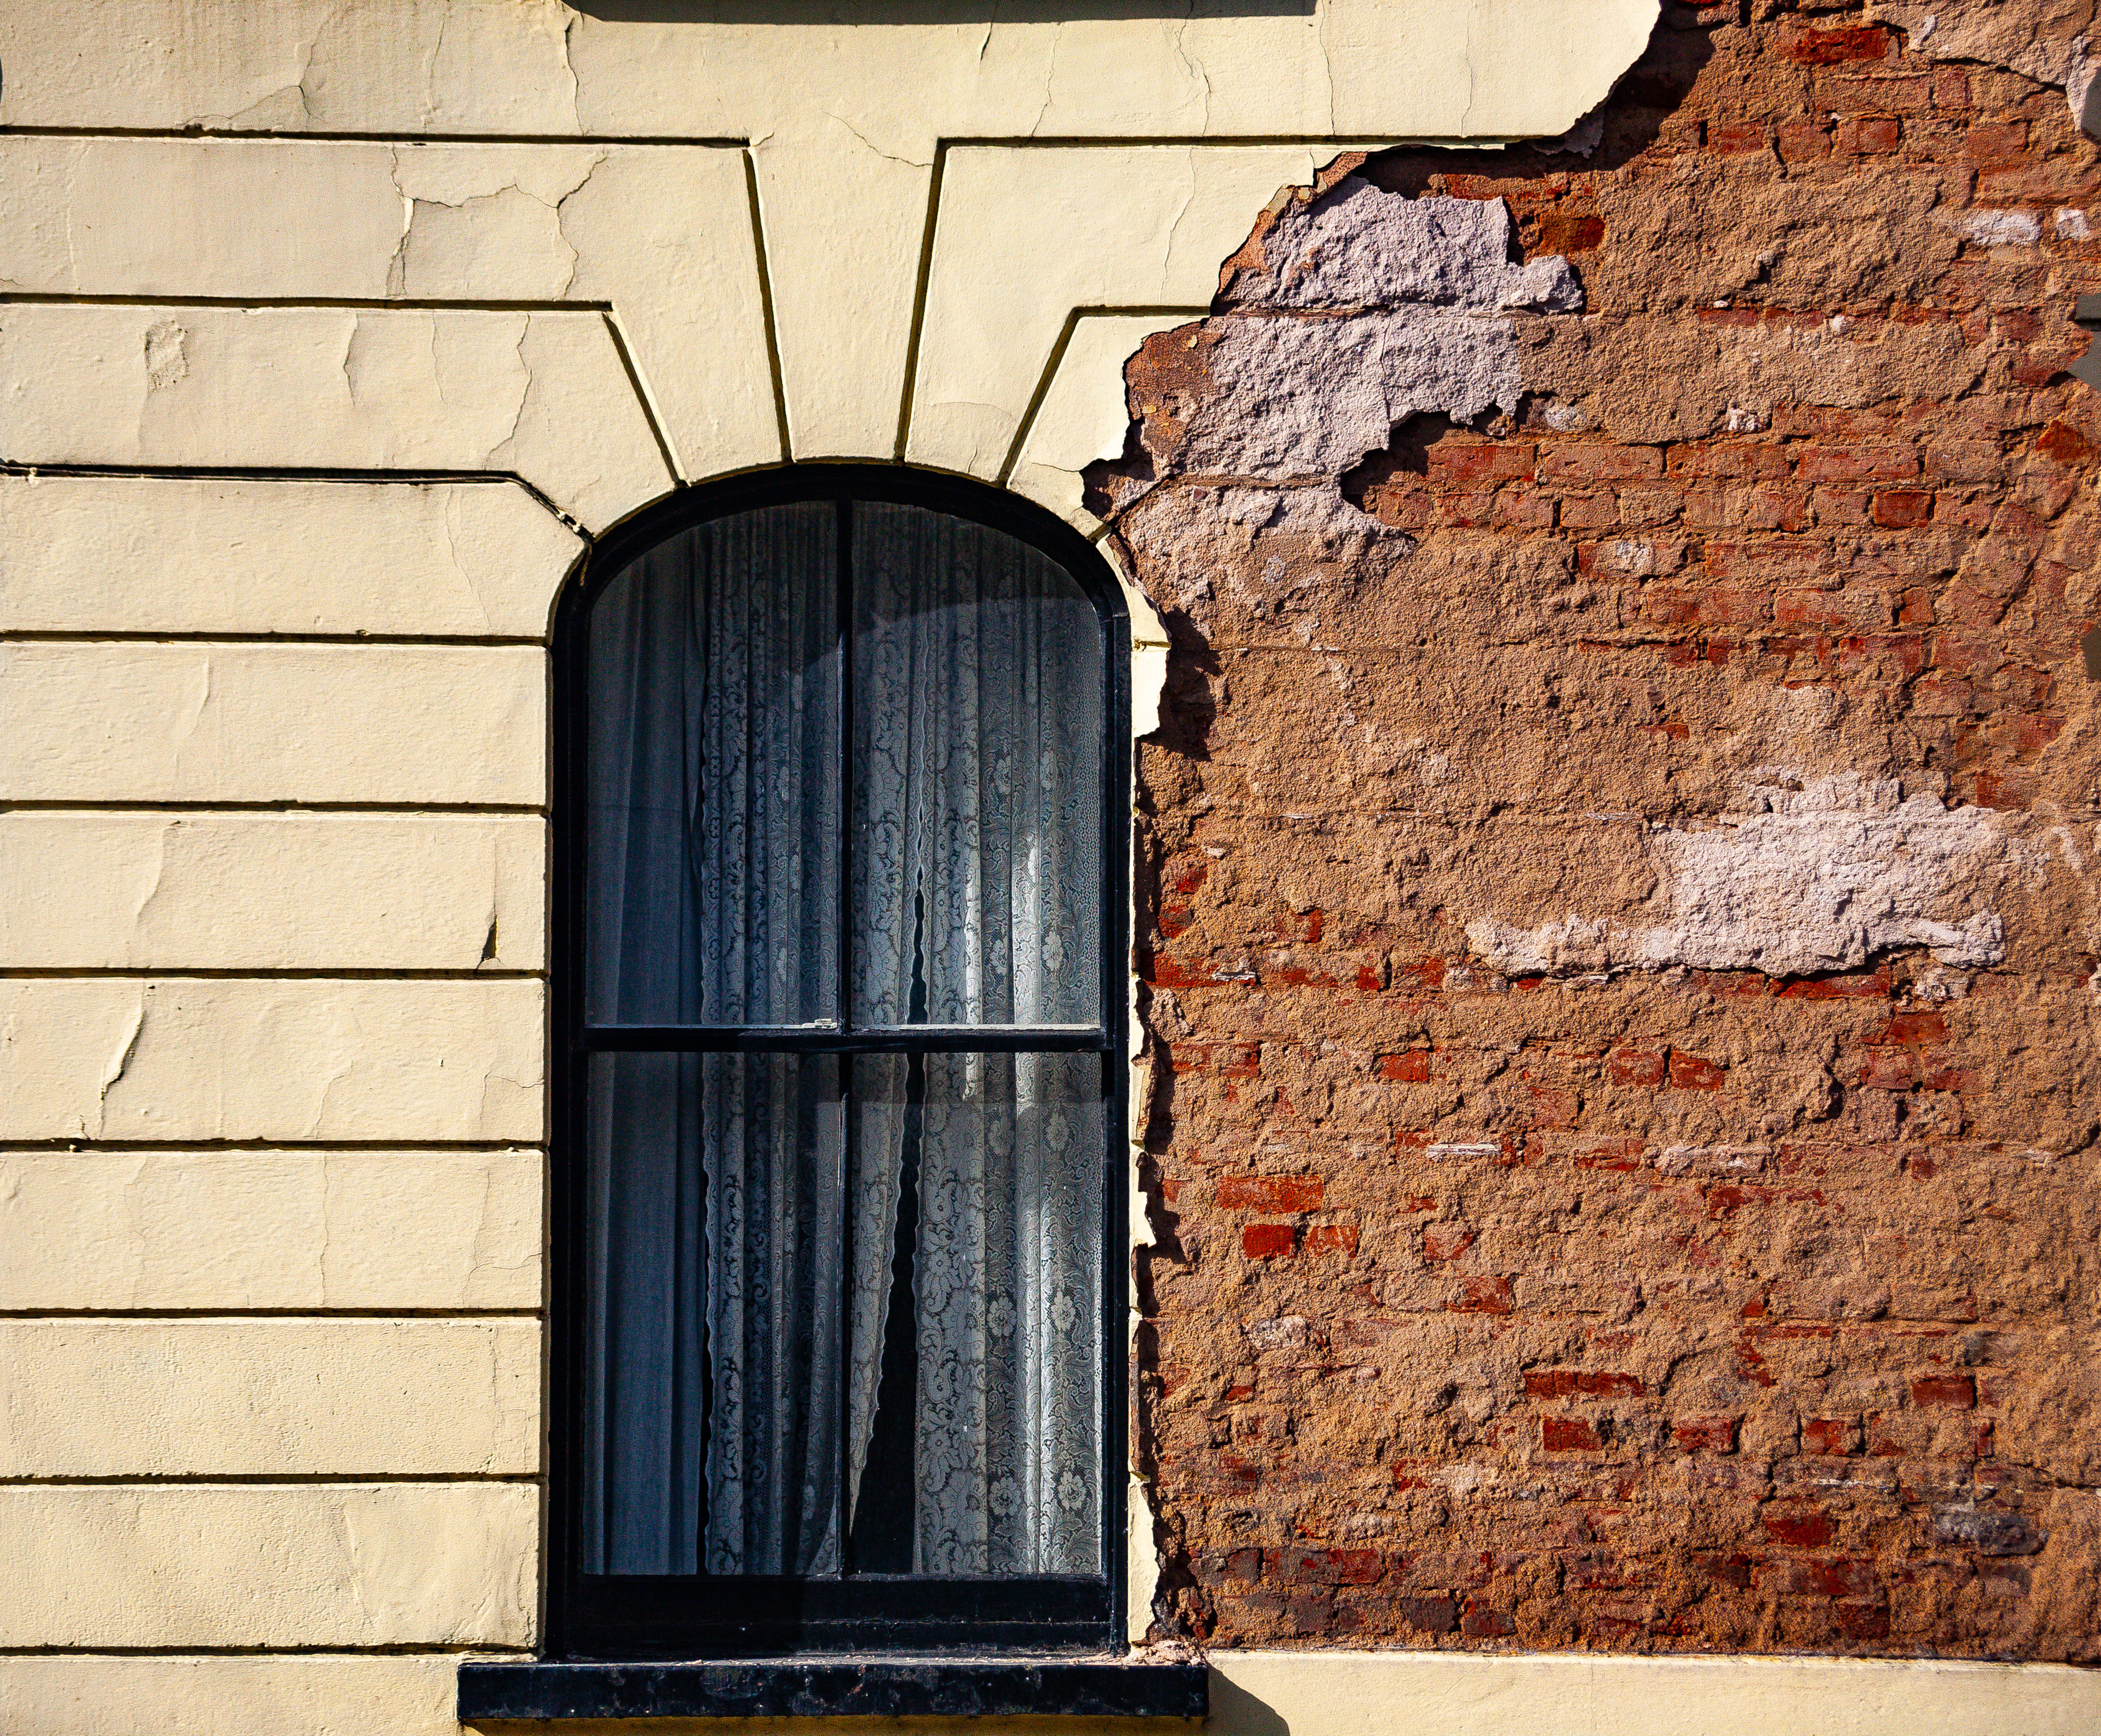 N Ireland, Limavady Prov, Window, 2009, IMG 0202